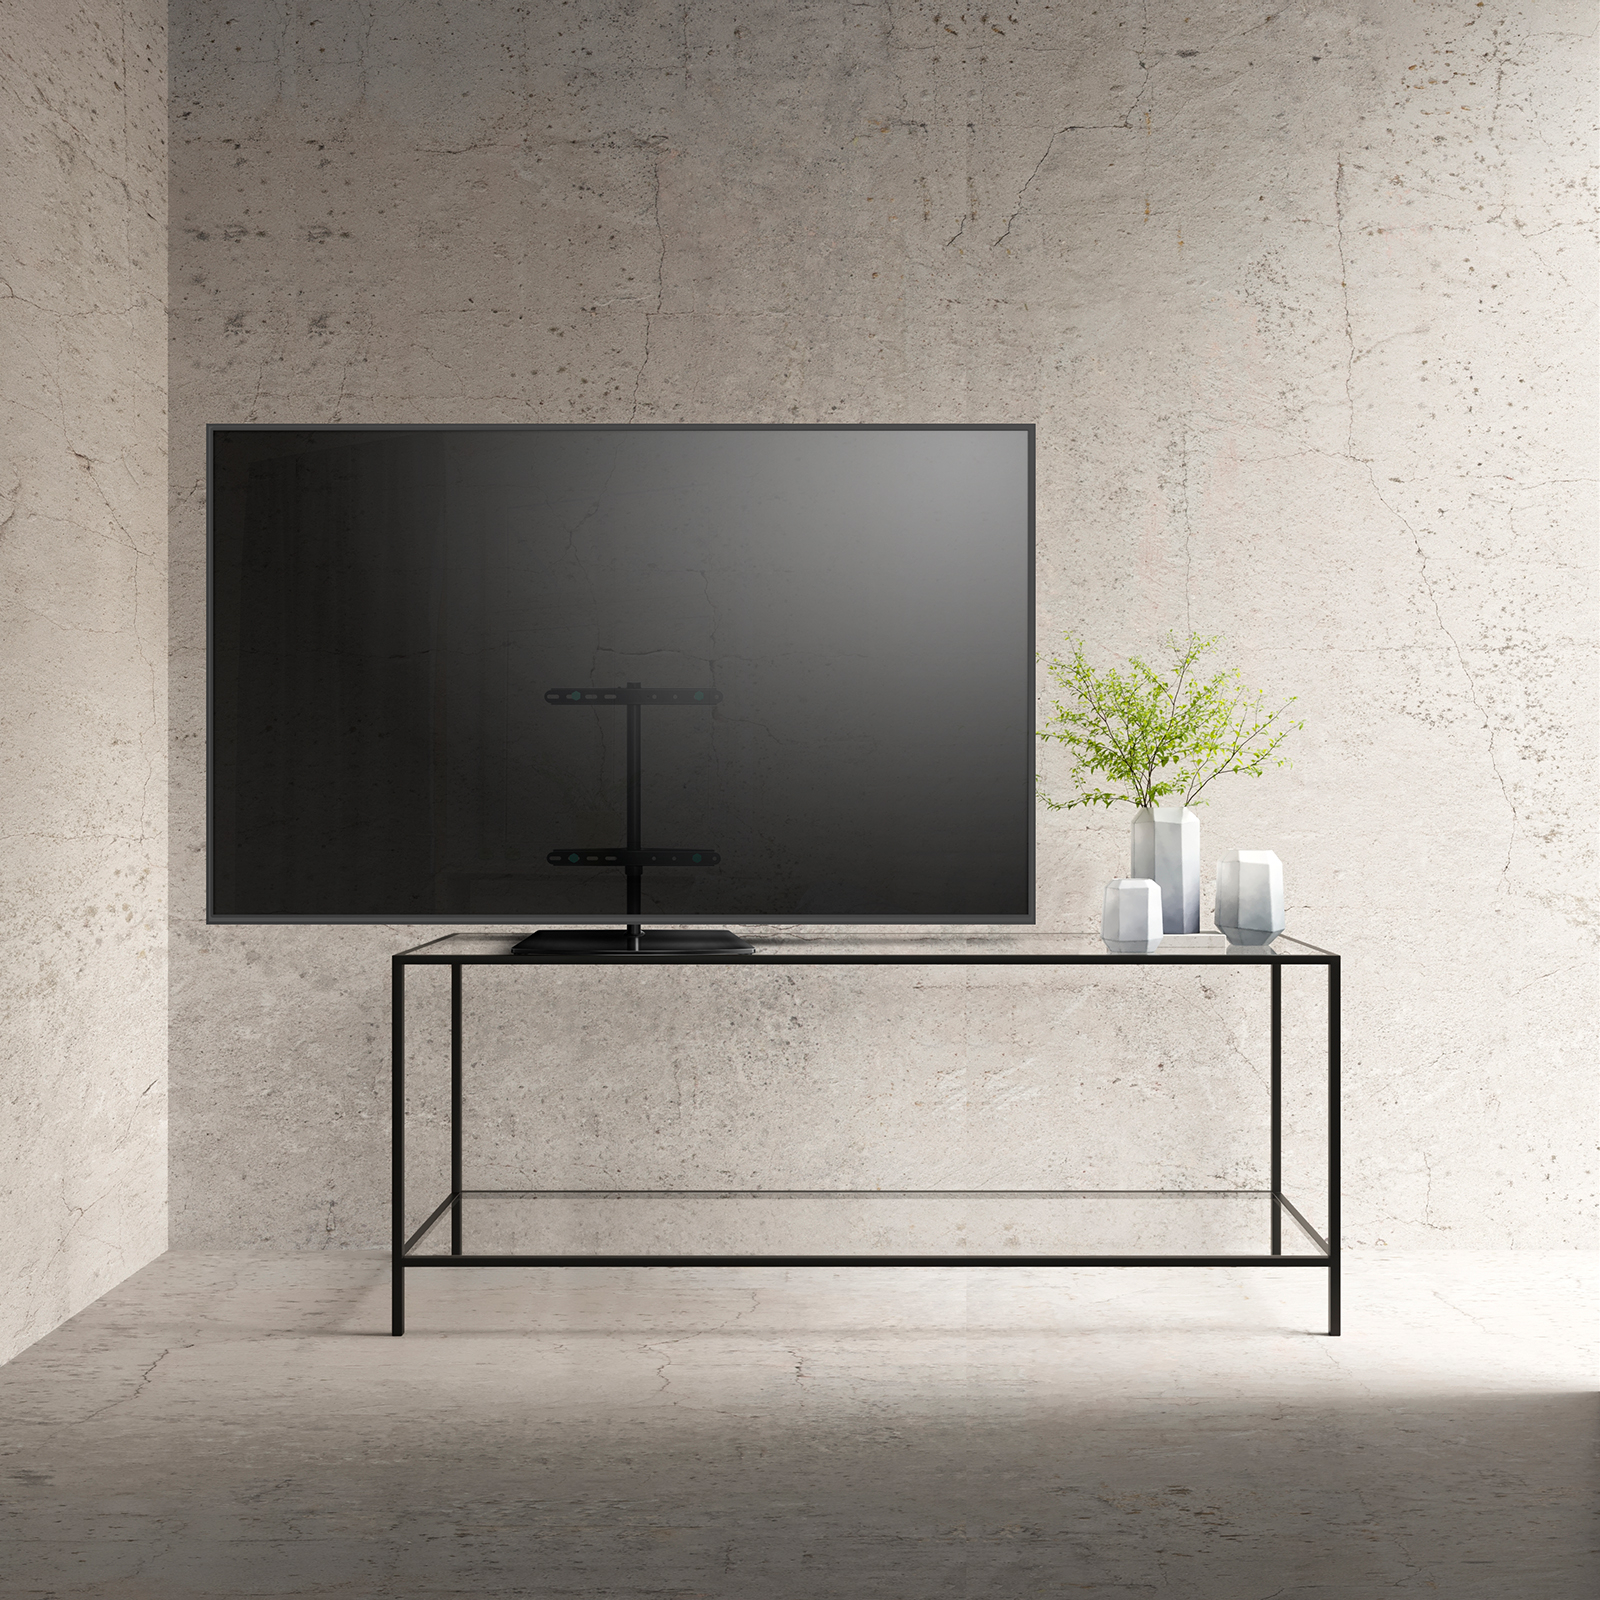 Напольная стойка для телевизора — Купить подставку для дисплея на пол - TVZONE